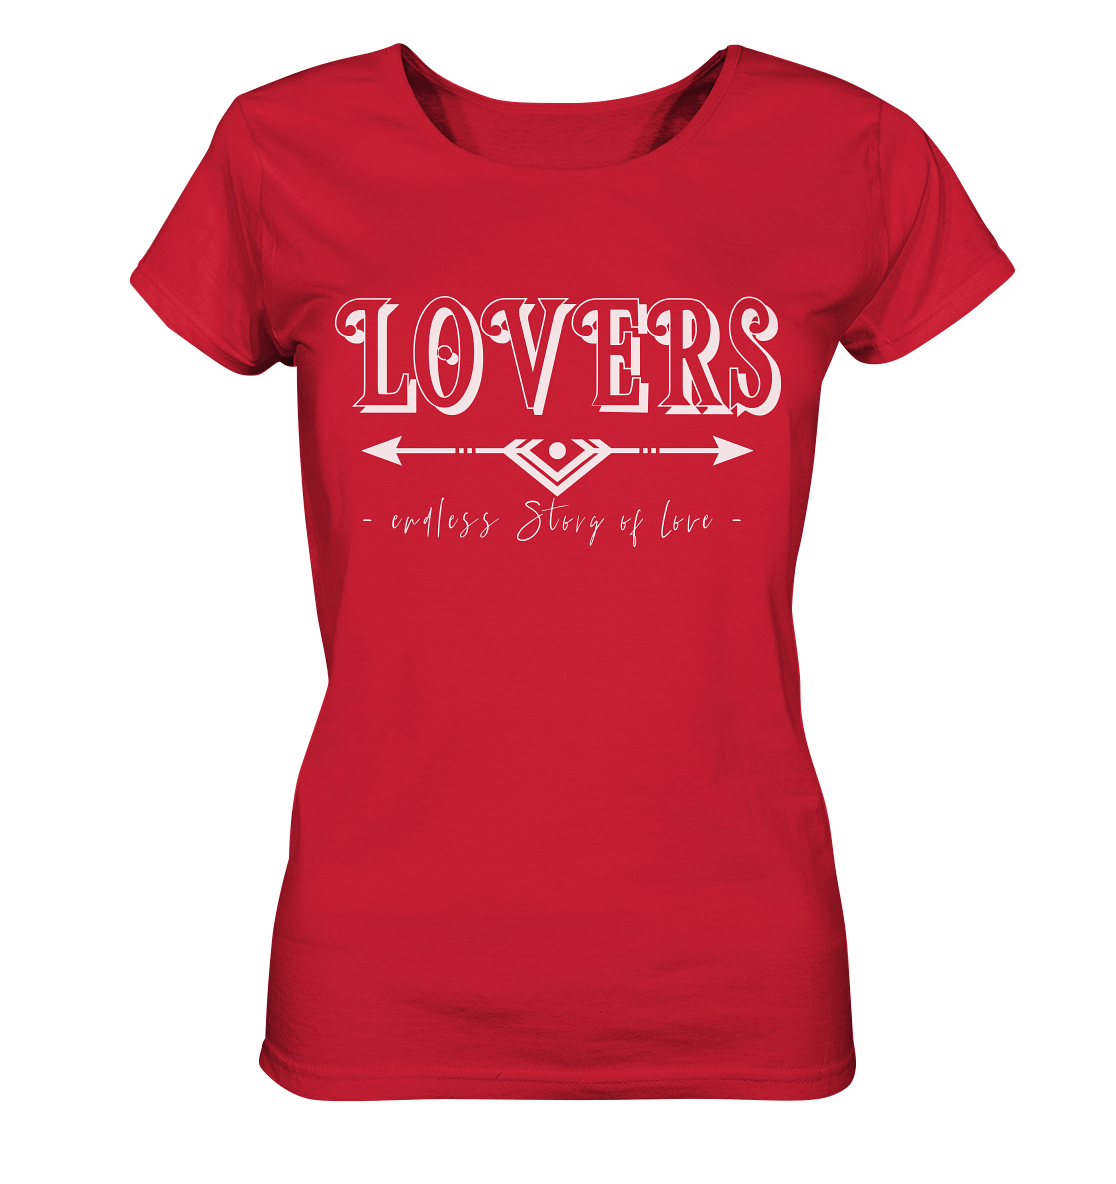 LOVERS endless story of Love T-Shirt Damen in rot couple goals partnerlook t shirt damenlovers t-shirt